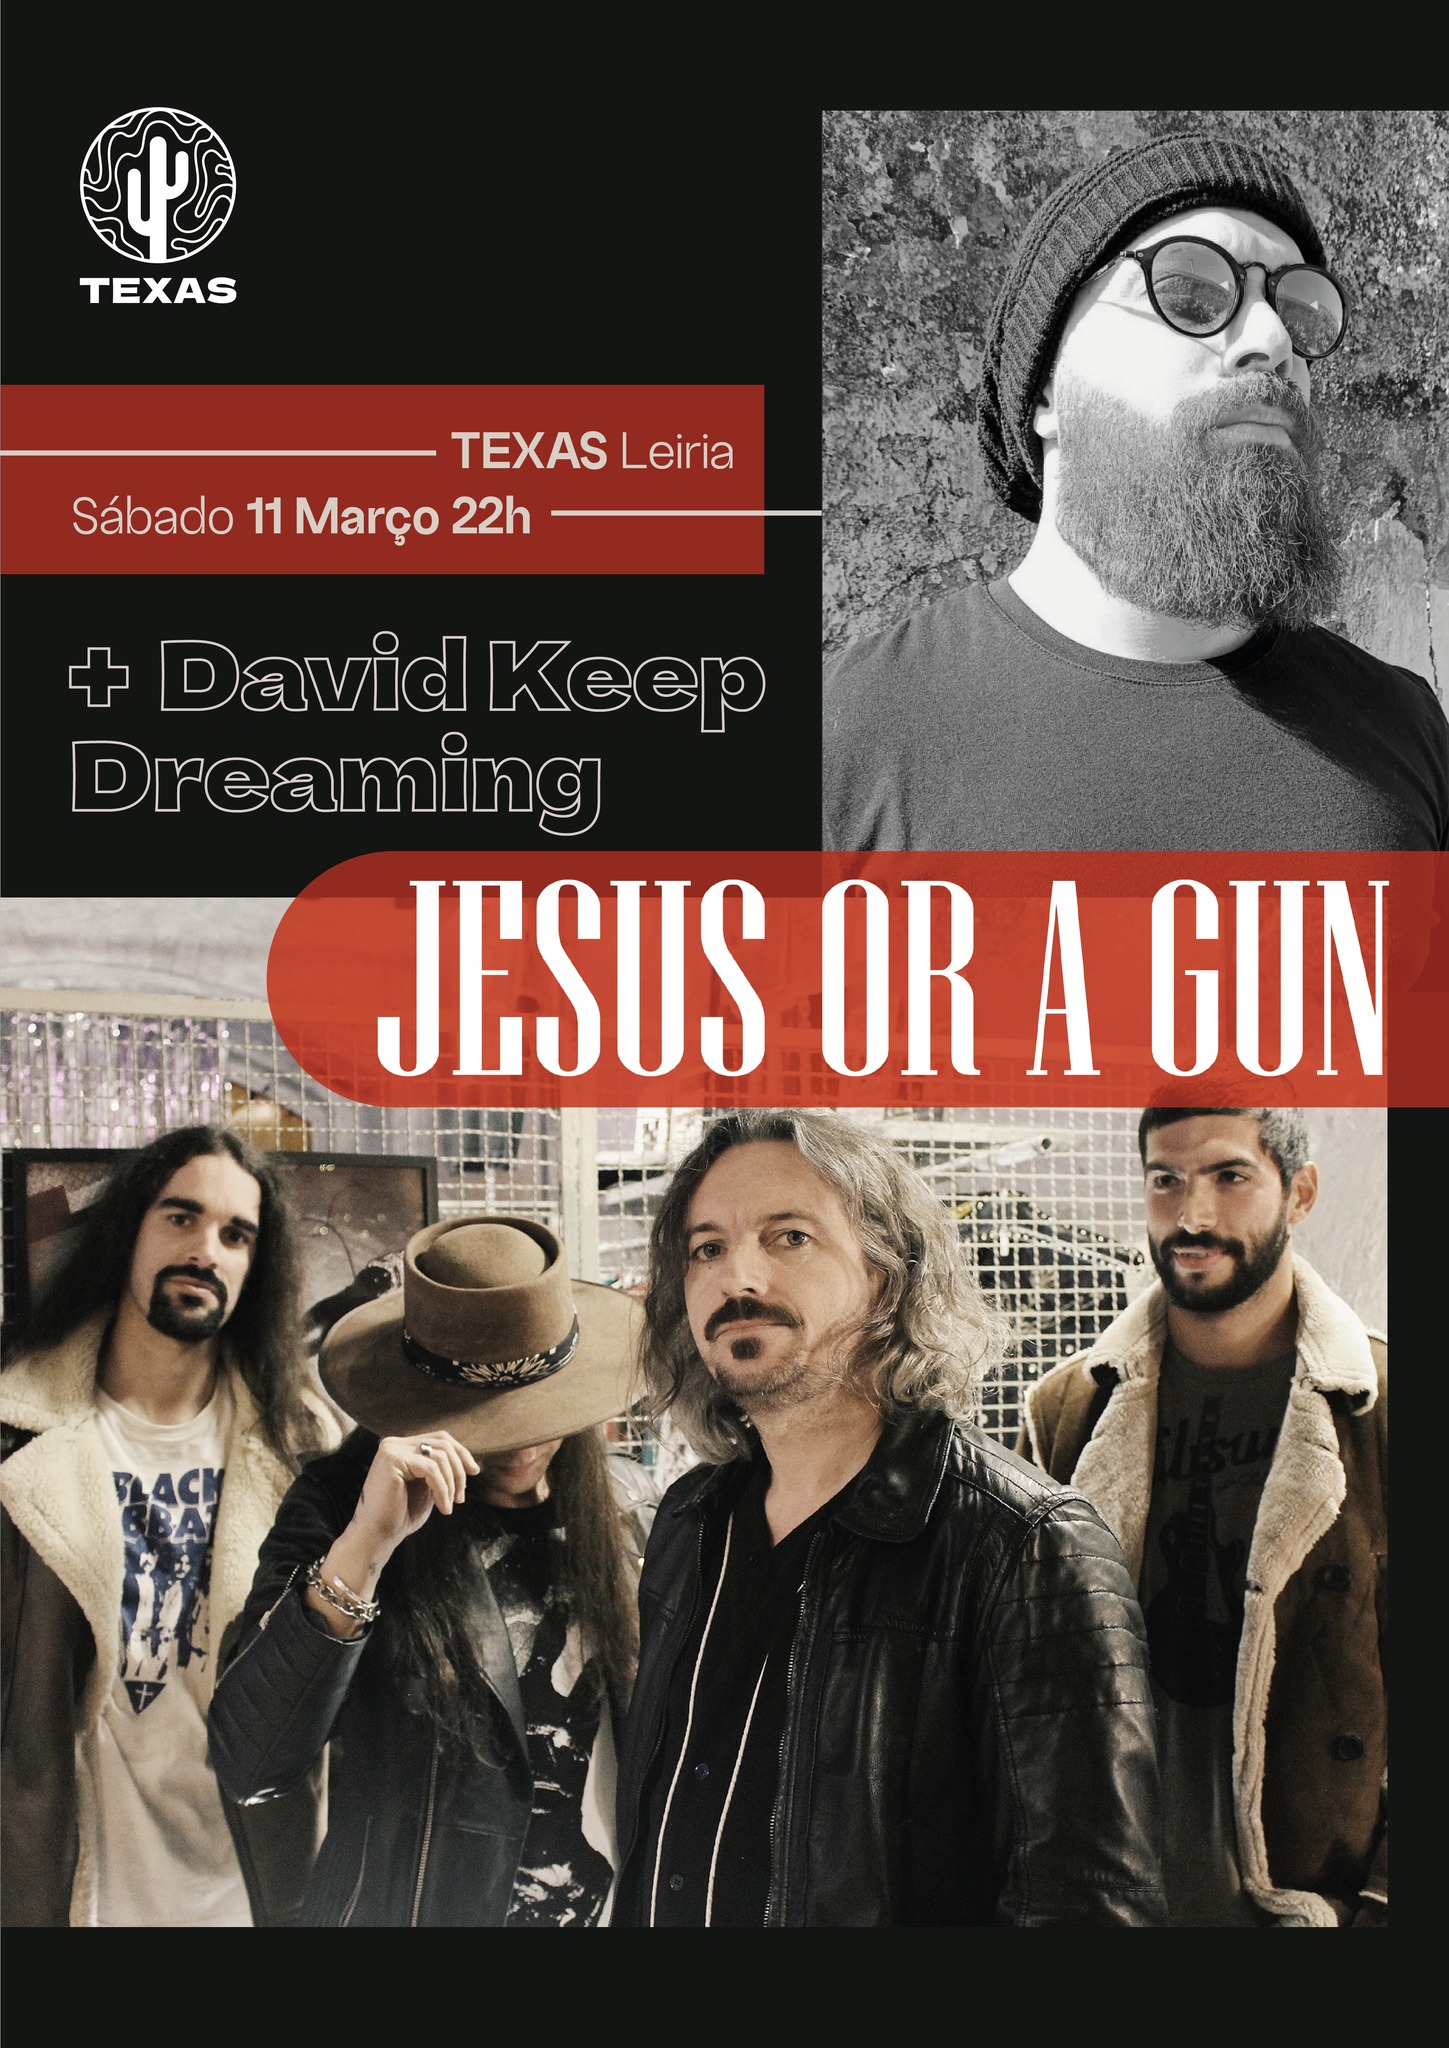 JESUS OR A GUN • DAVID KEEP DREAMING | Texas Leiria